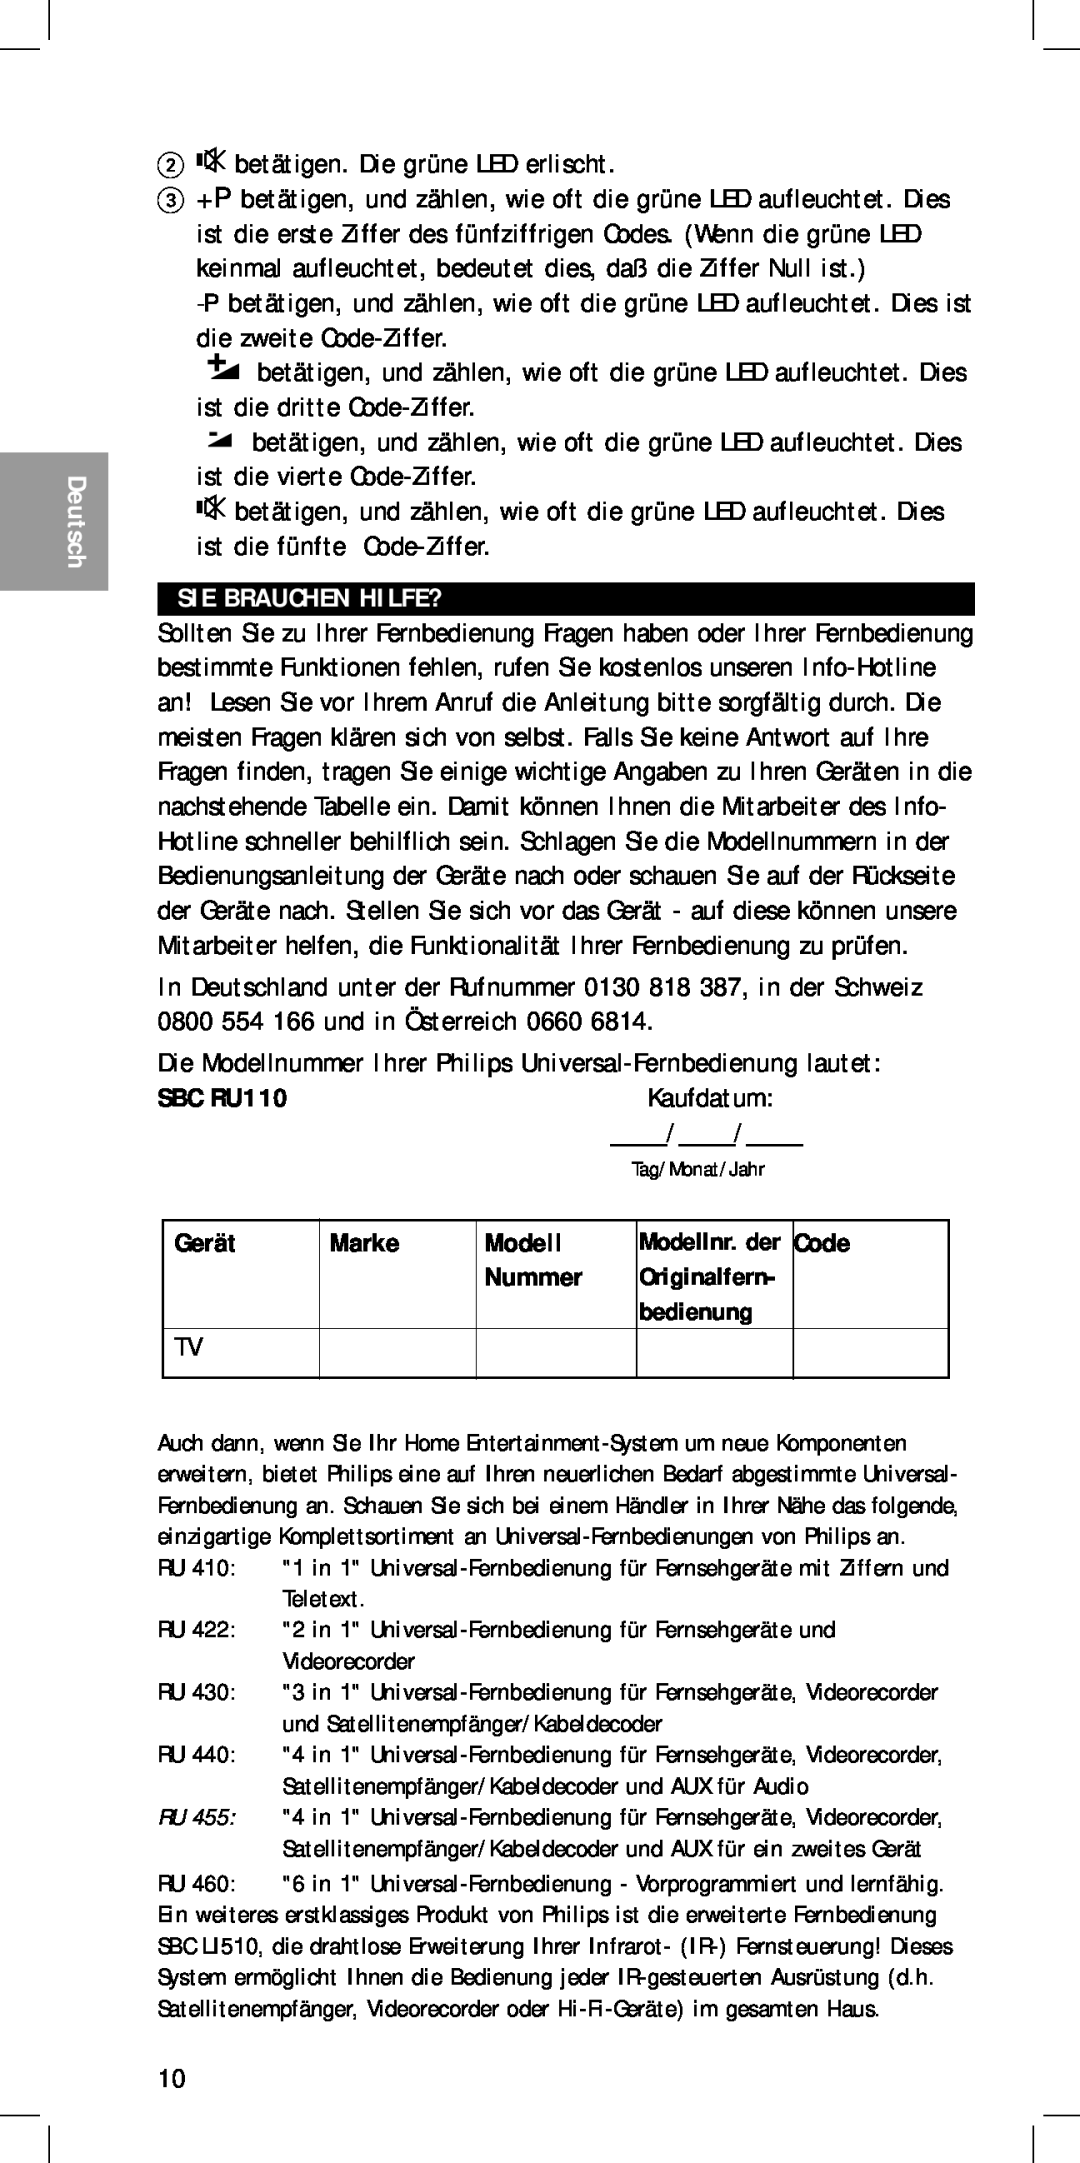 Philips MC-110 manual Sie Brauchen Hilfe?, Kaufdatum, Gerät, Marke, Modell, Deutsch, SBC RU110 